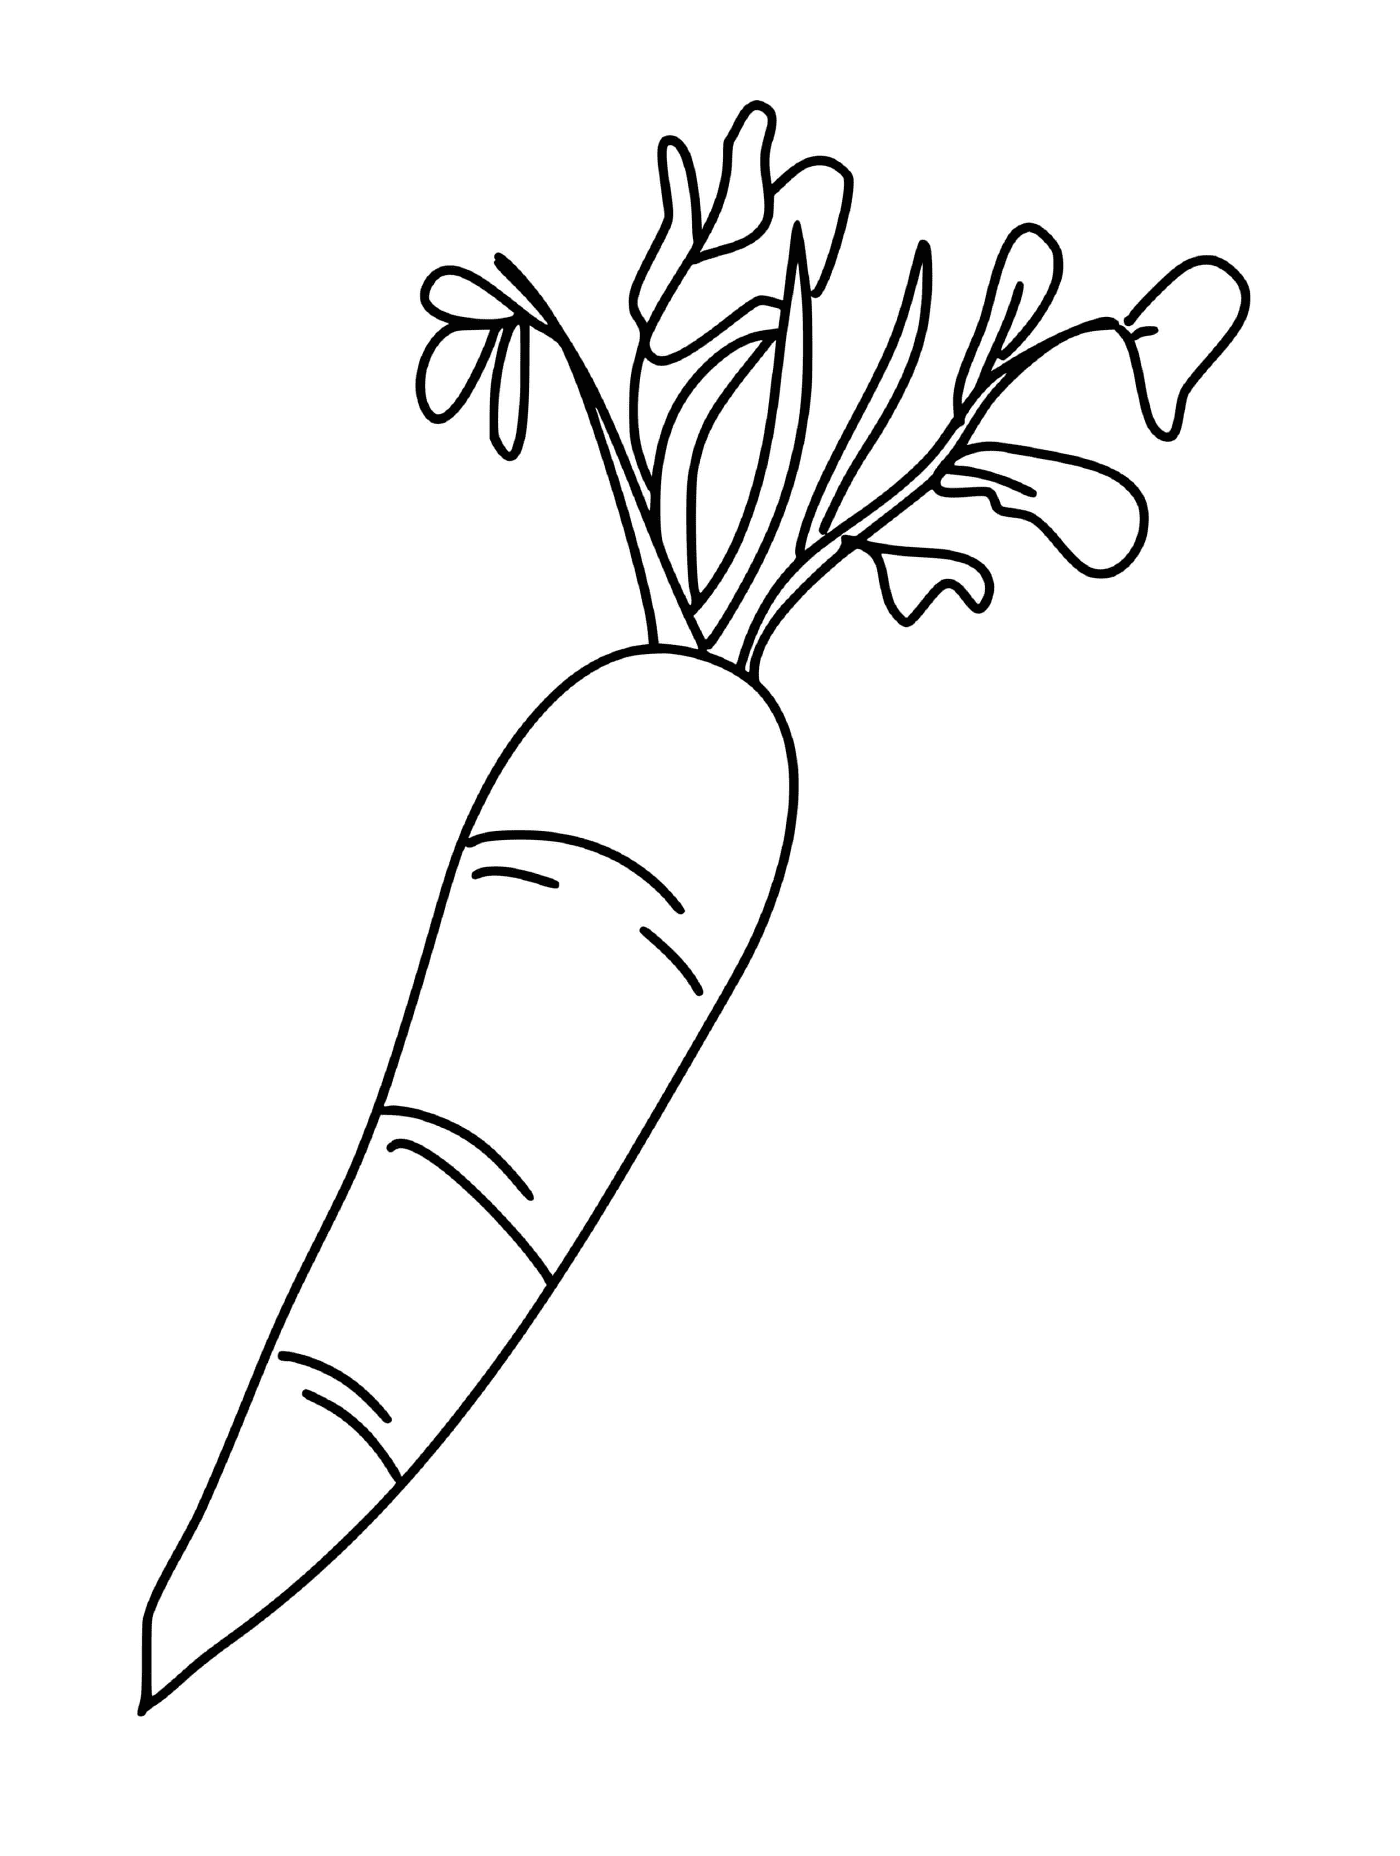  Karotte verbessert die Regeneration der Haut, eine Karotte 